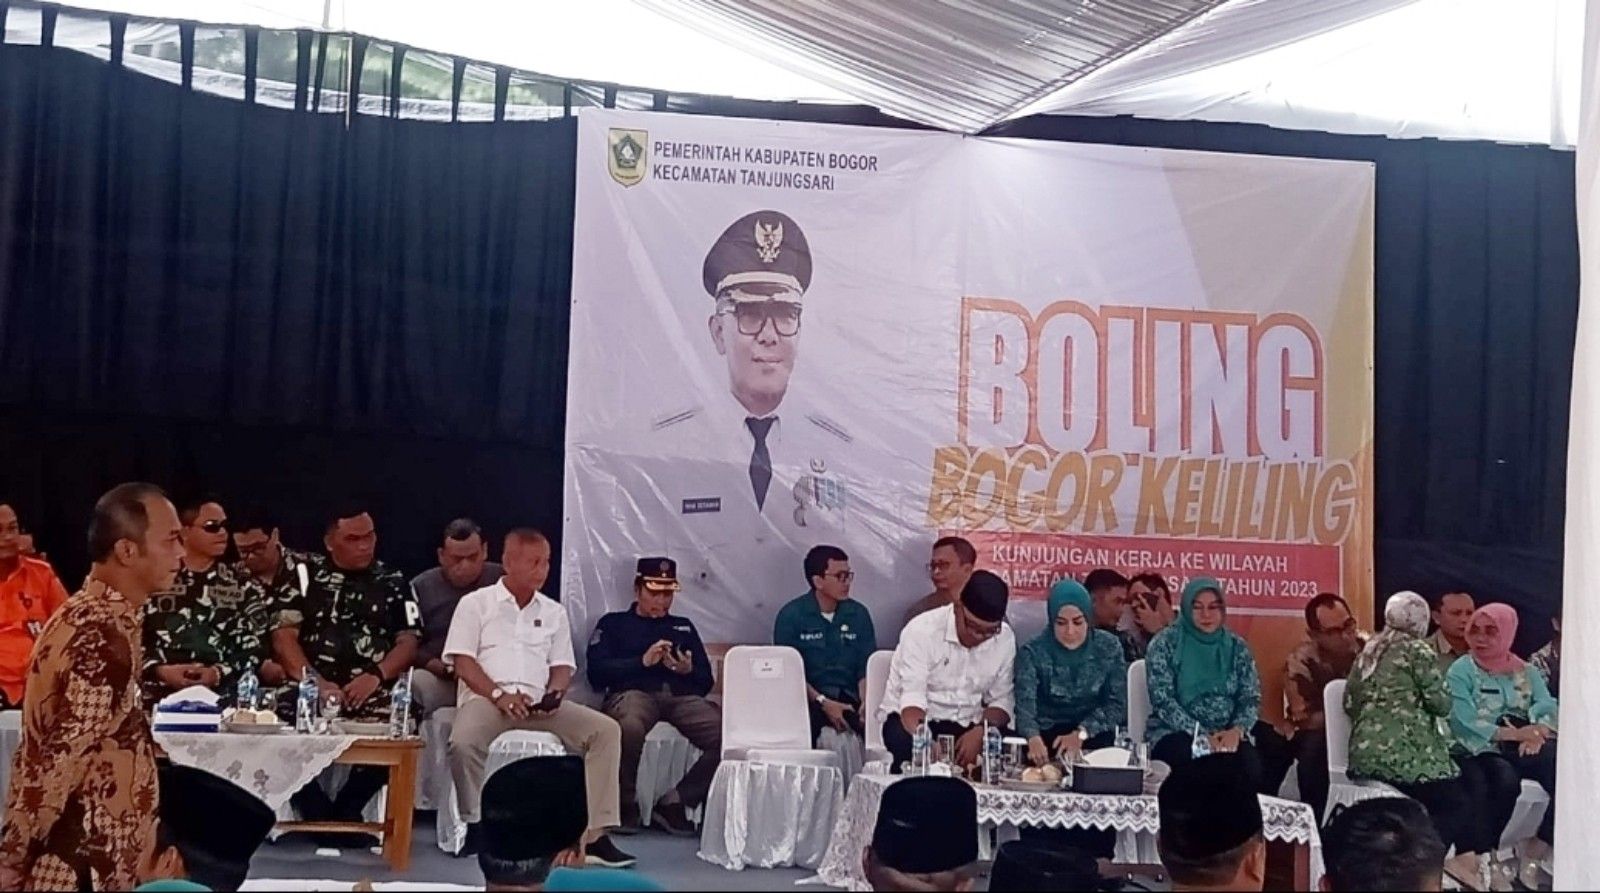 Bupati Bogor Iwan Setiawan saat melakukan giat Bogor Keliling atau Boling ke wilayah kecamatan Tanjungsari, kabupaten Bogor, pada Jumat 13 Oktober 2023.